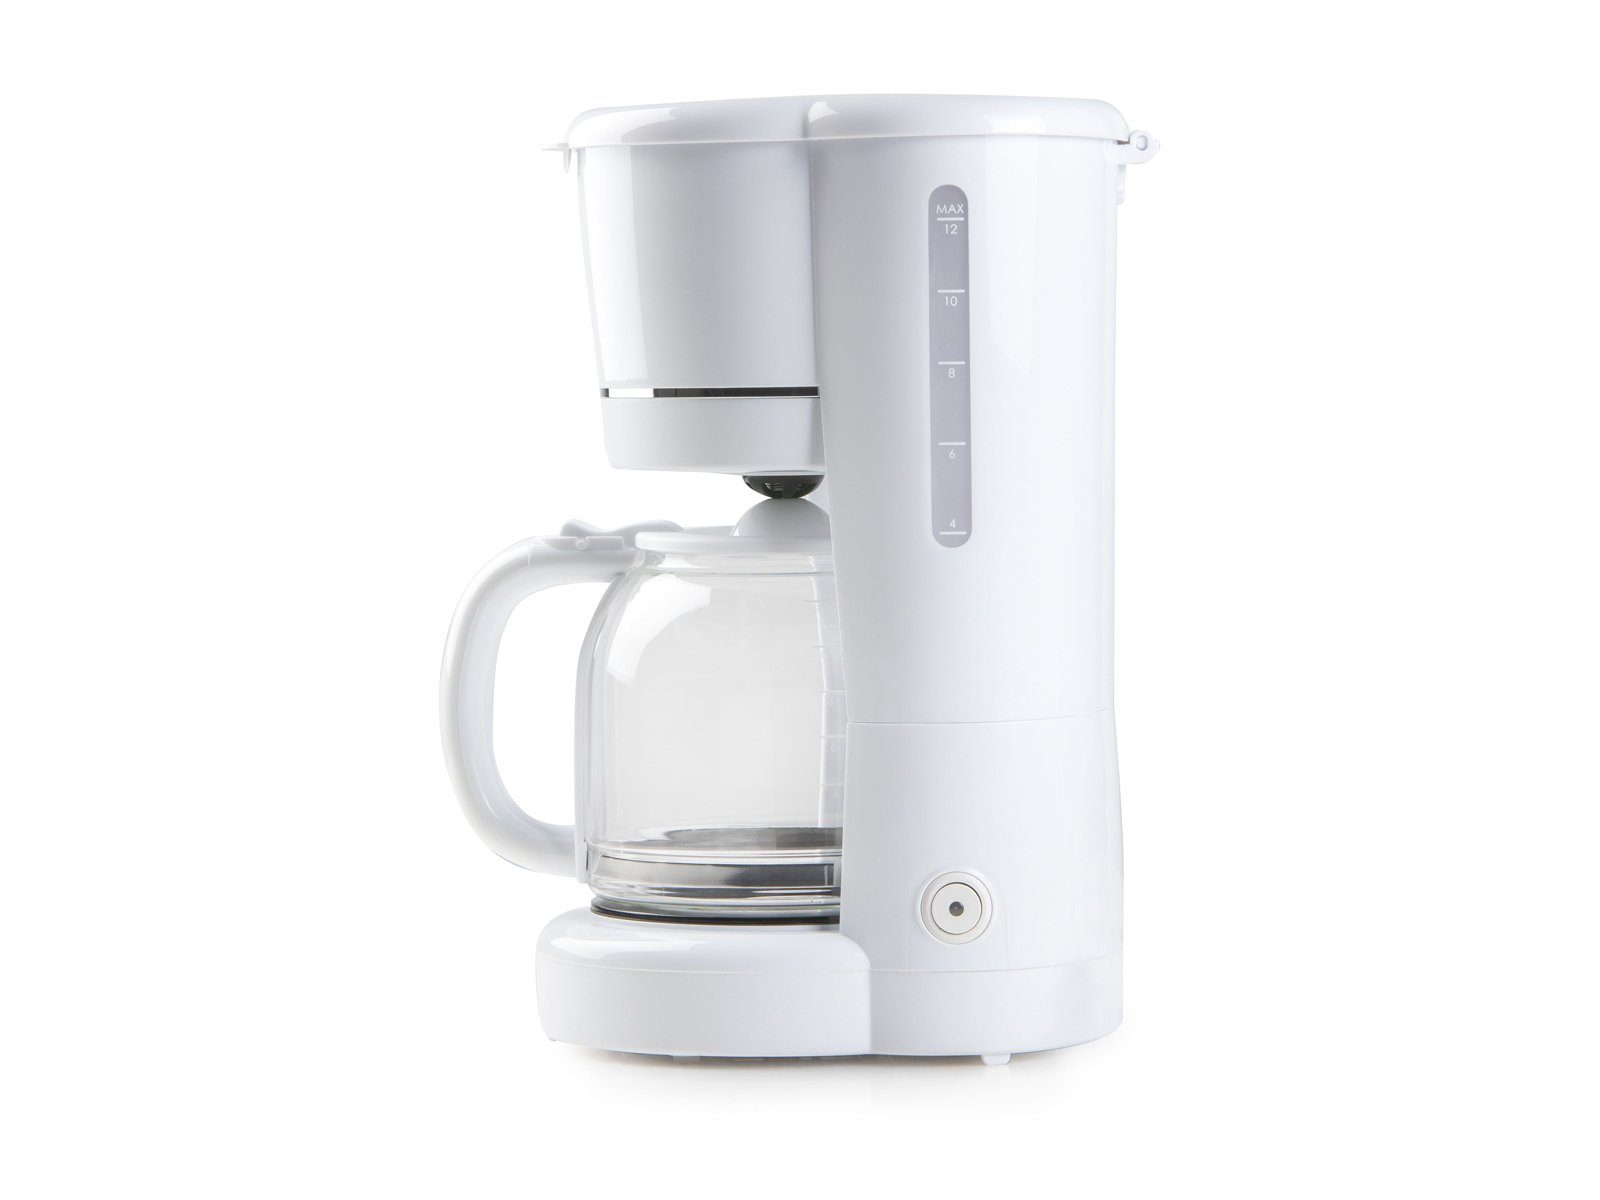 Tassen 1.5l mit nachhaltige Glaskanne kleine Weiß Kaffeekanne, Kaffee-Filtermaschine Filterkaffeemaschine, 4, Permanentfilter Domo 12